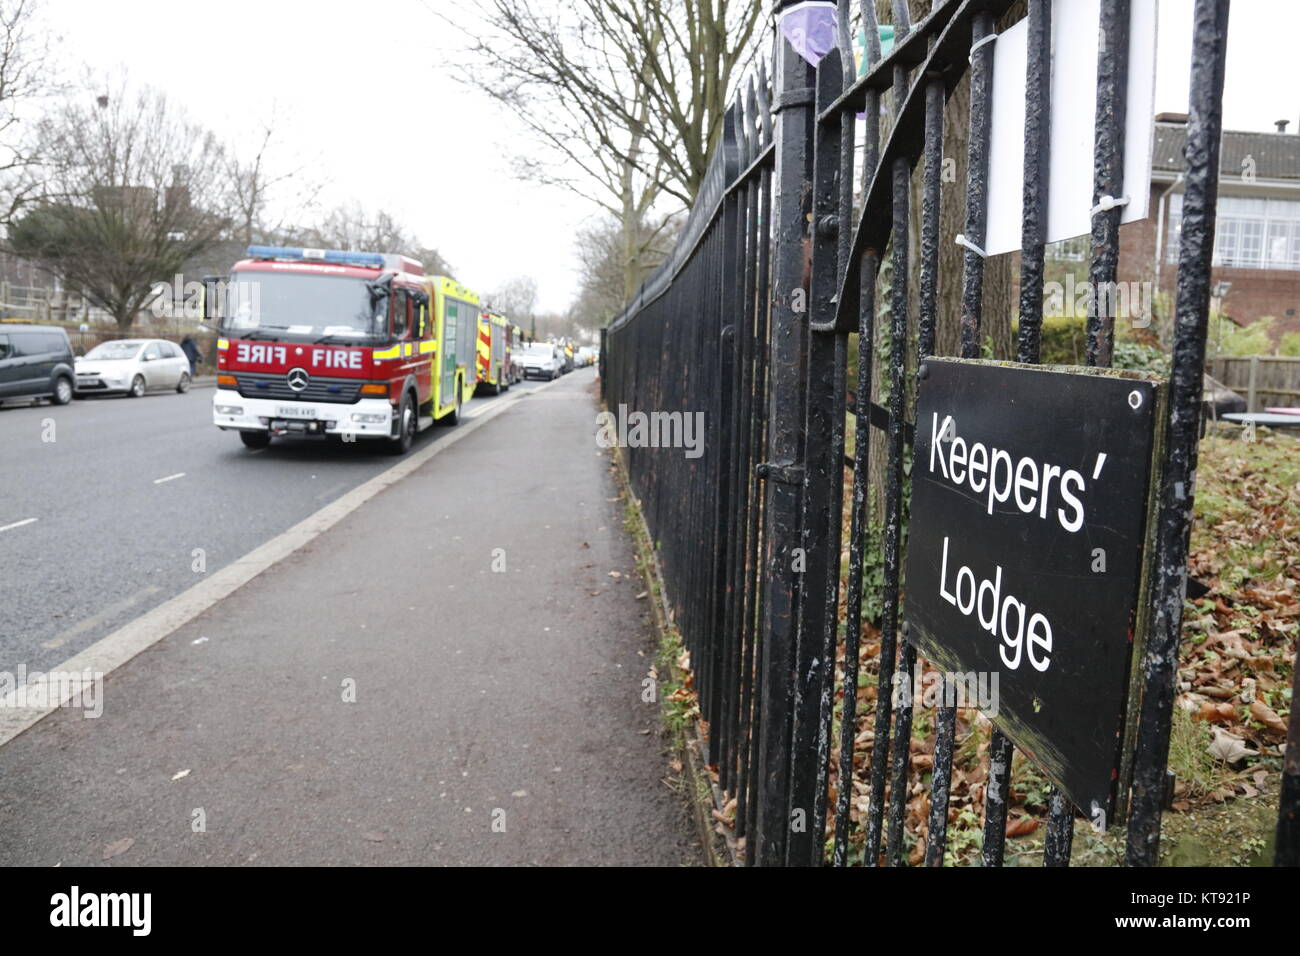 Londres, Reino Unido. 23 dic, 2017. El Zoológico de Londres donde el fuego 70 bomberos respondió Crédito: Fantástico conejo/Alamy Live News Foto de stock